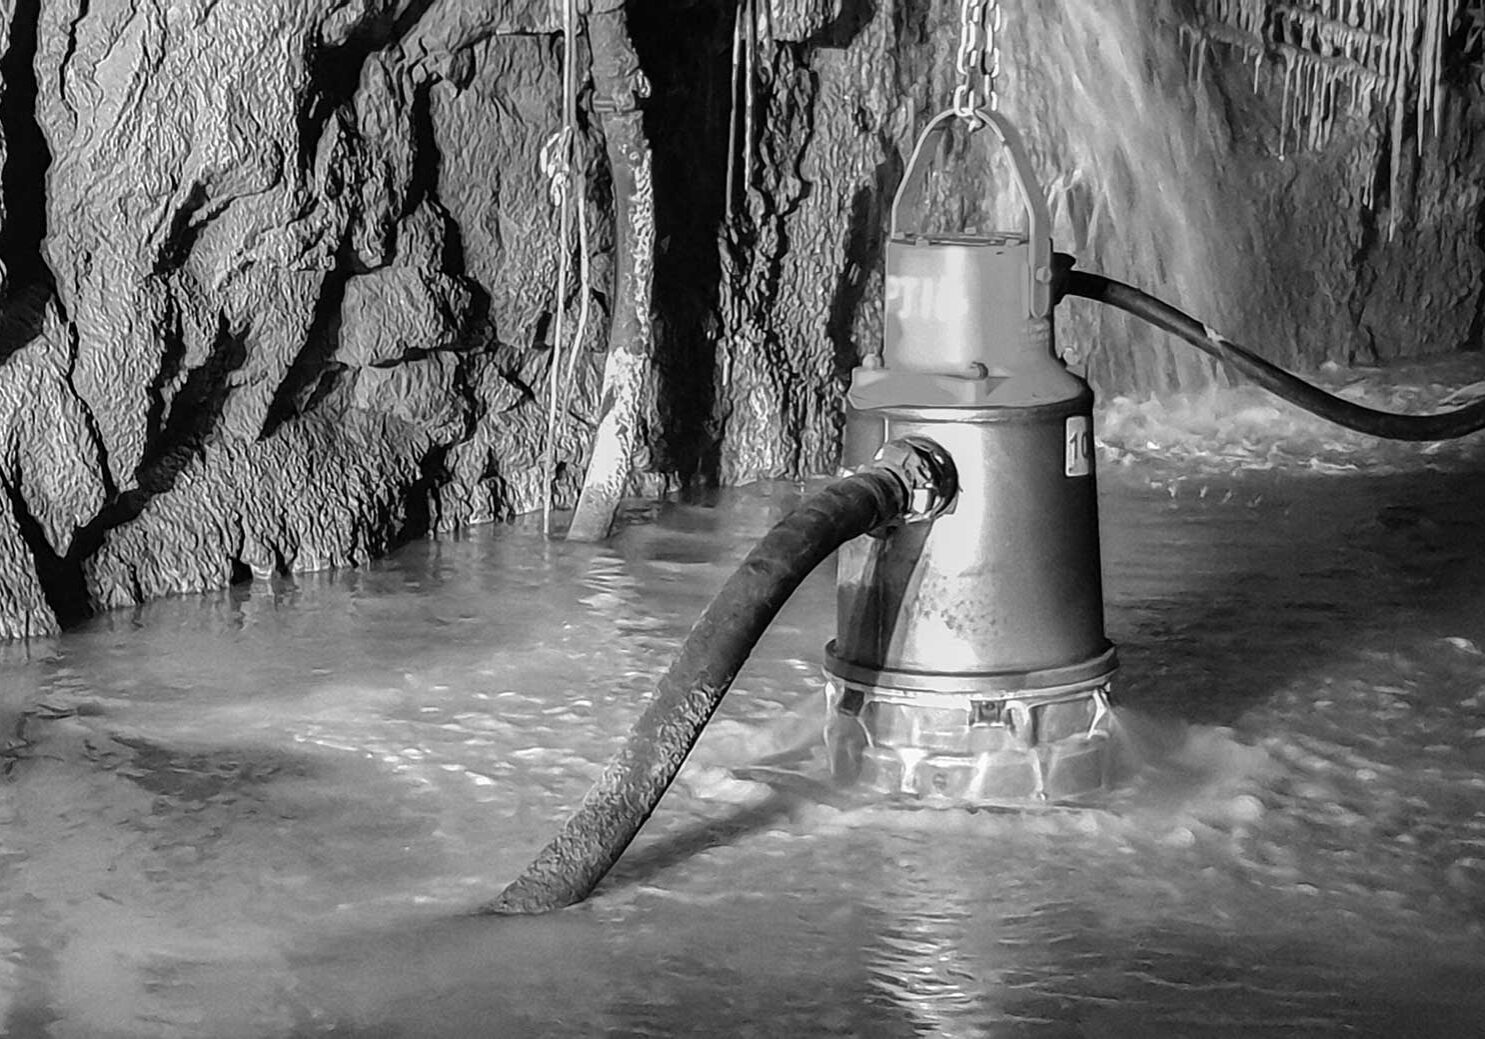 An underground mine dewatering pump pumping water while semi-submersed in an underground mine